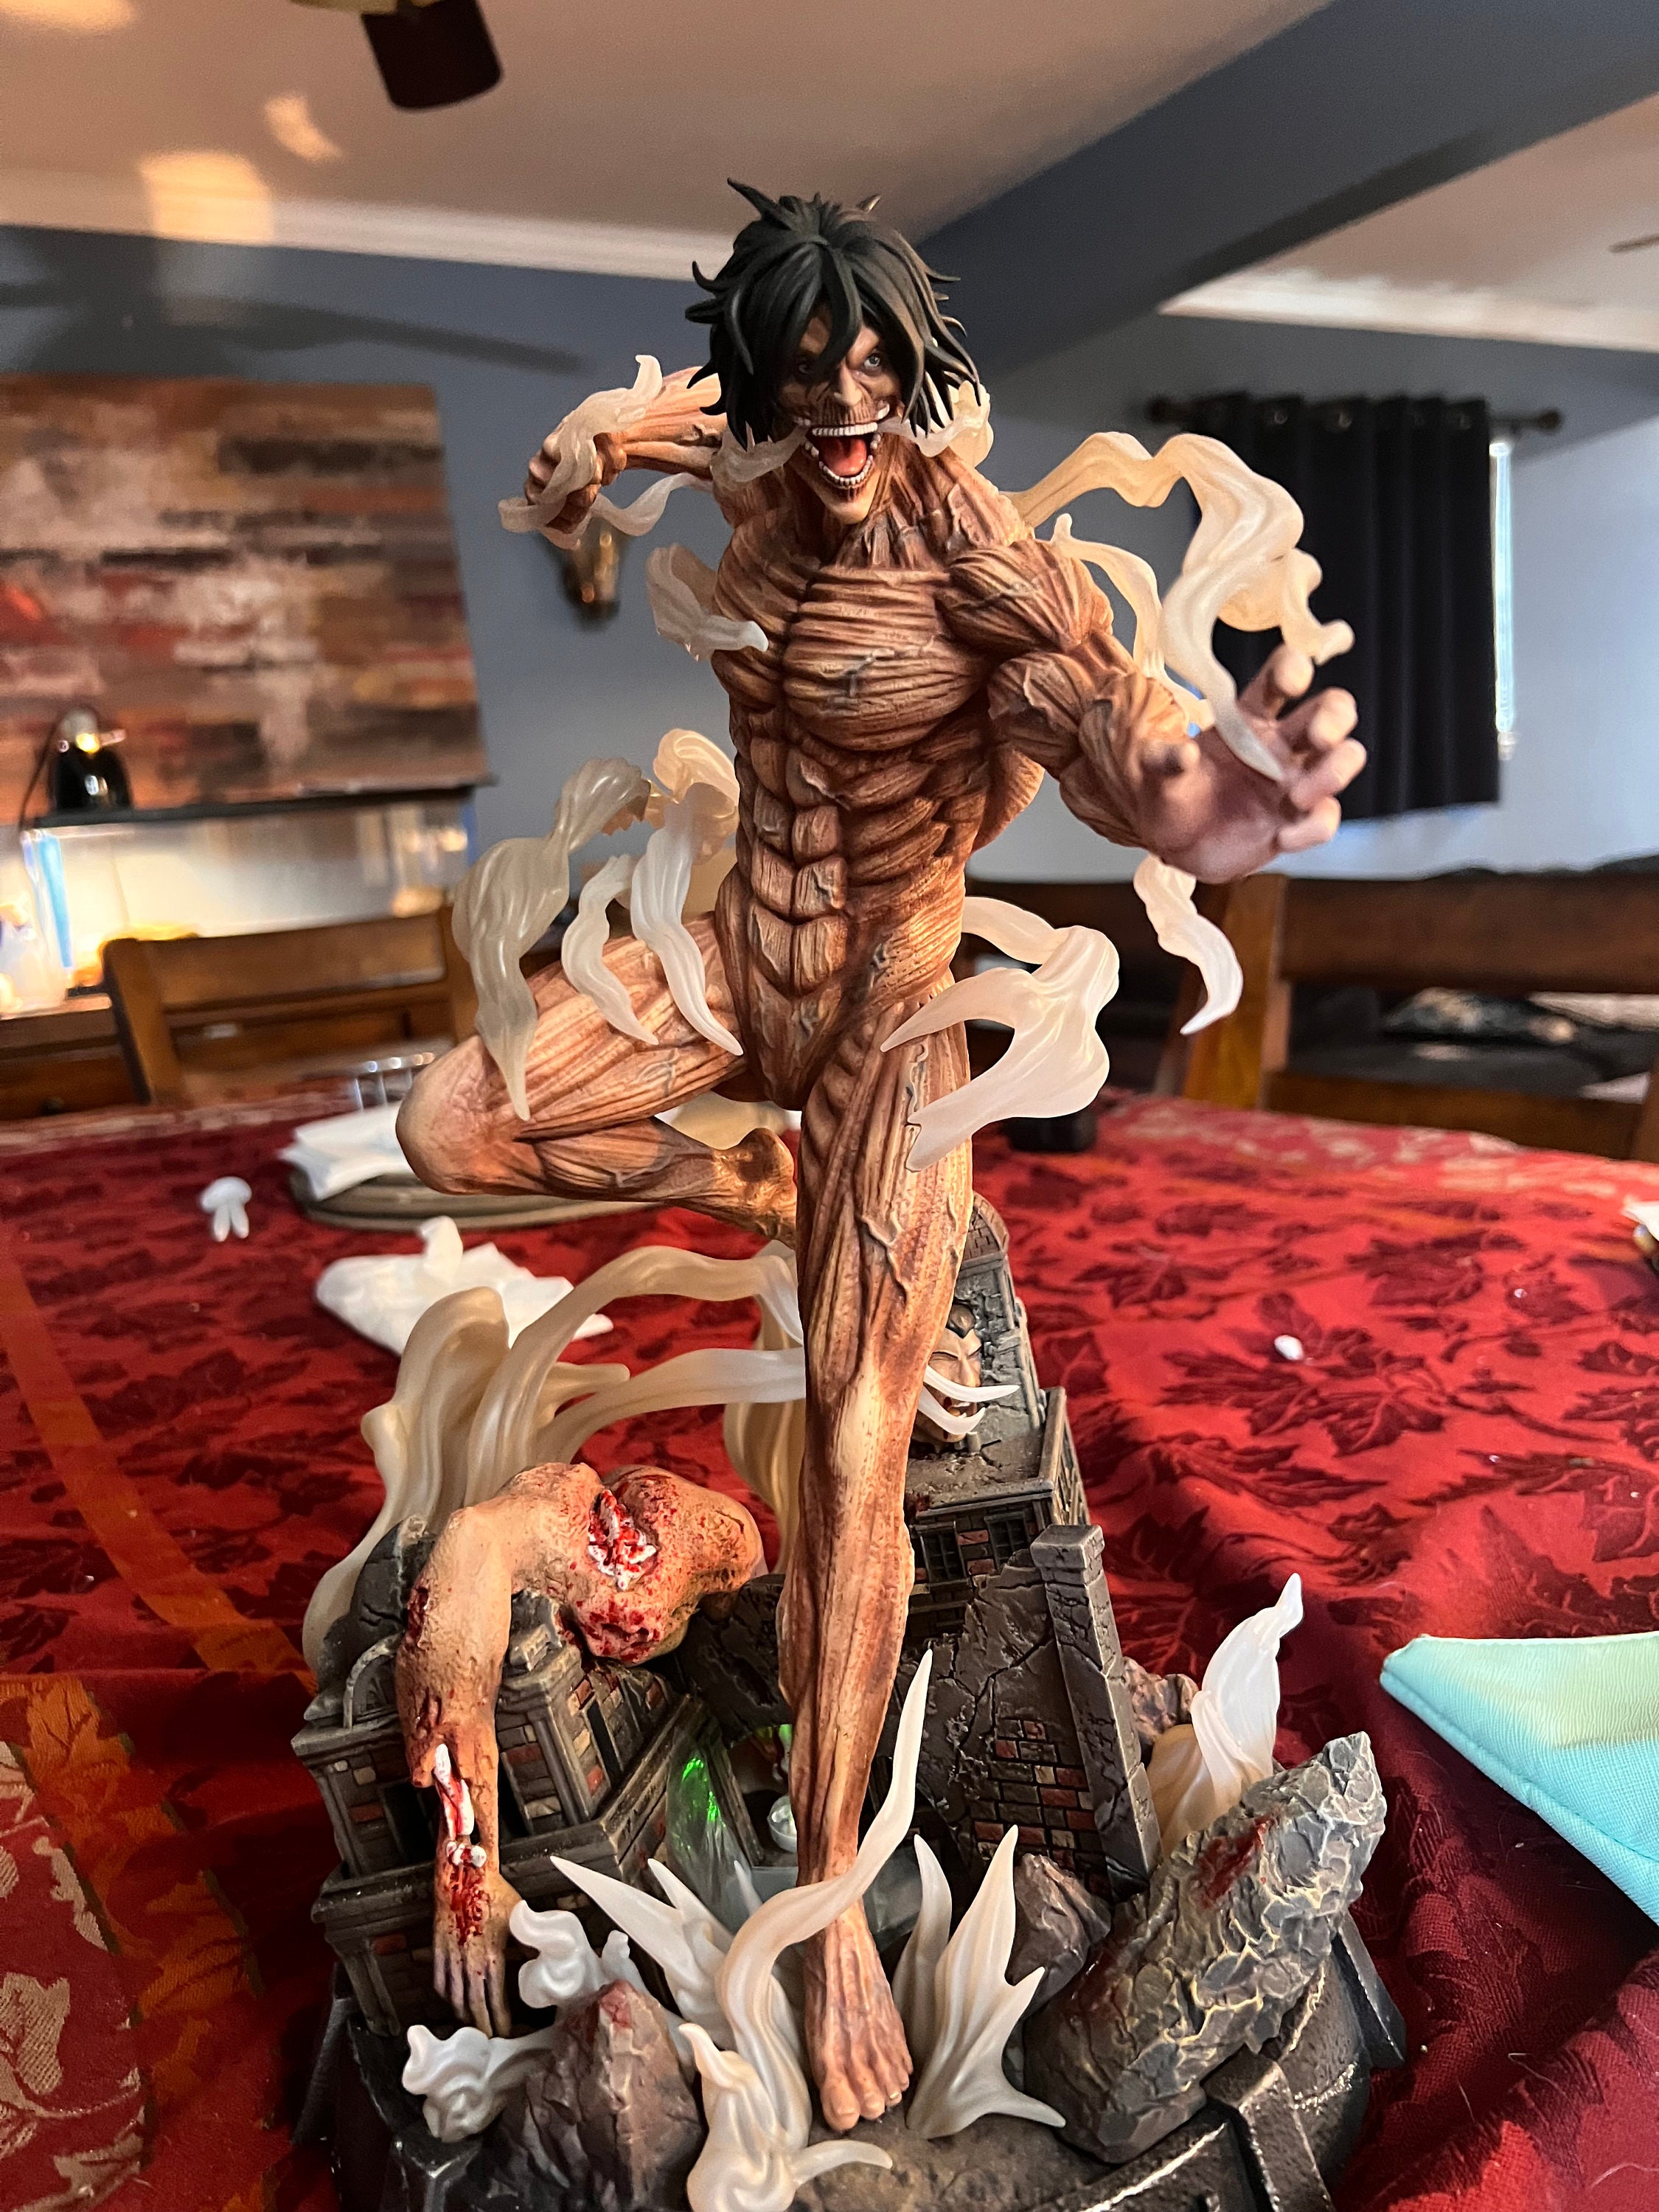 YLEAFUN Anime Eren Jaeger Action Figure Model PVC Figure Collectible Home  Desktop Decorations, 10cm